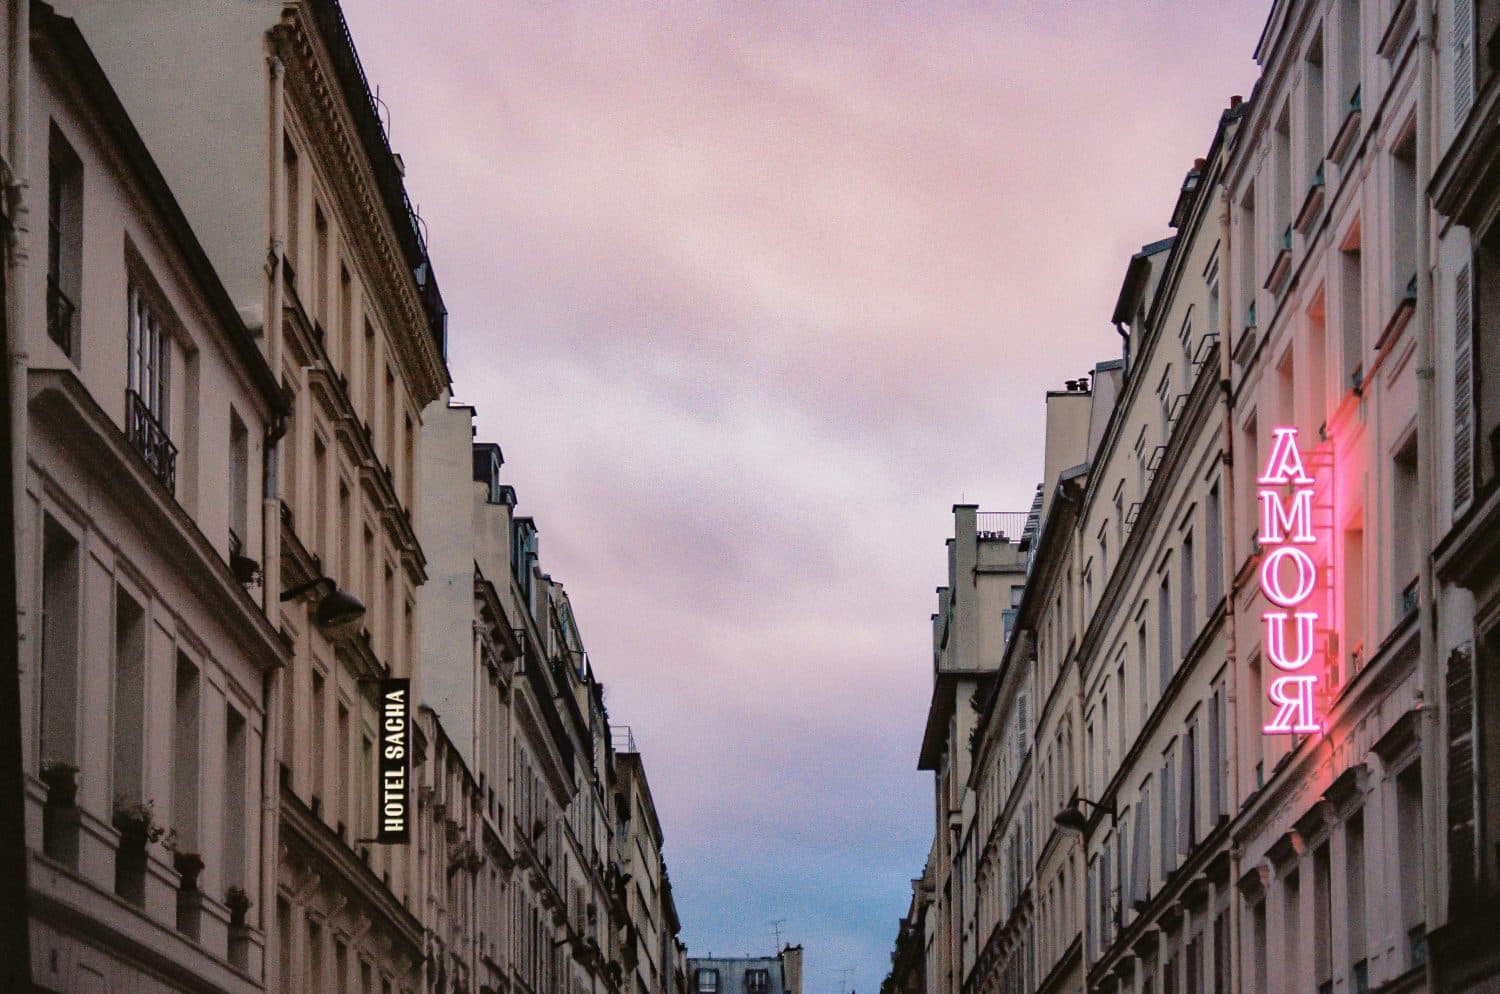 Edifício com placa "Amour" ilustrando post de hotéis românticos em Paris